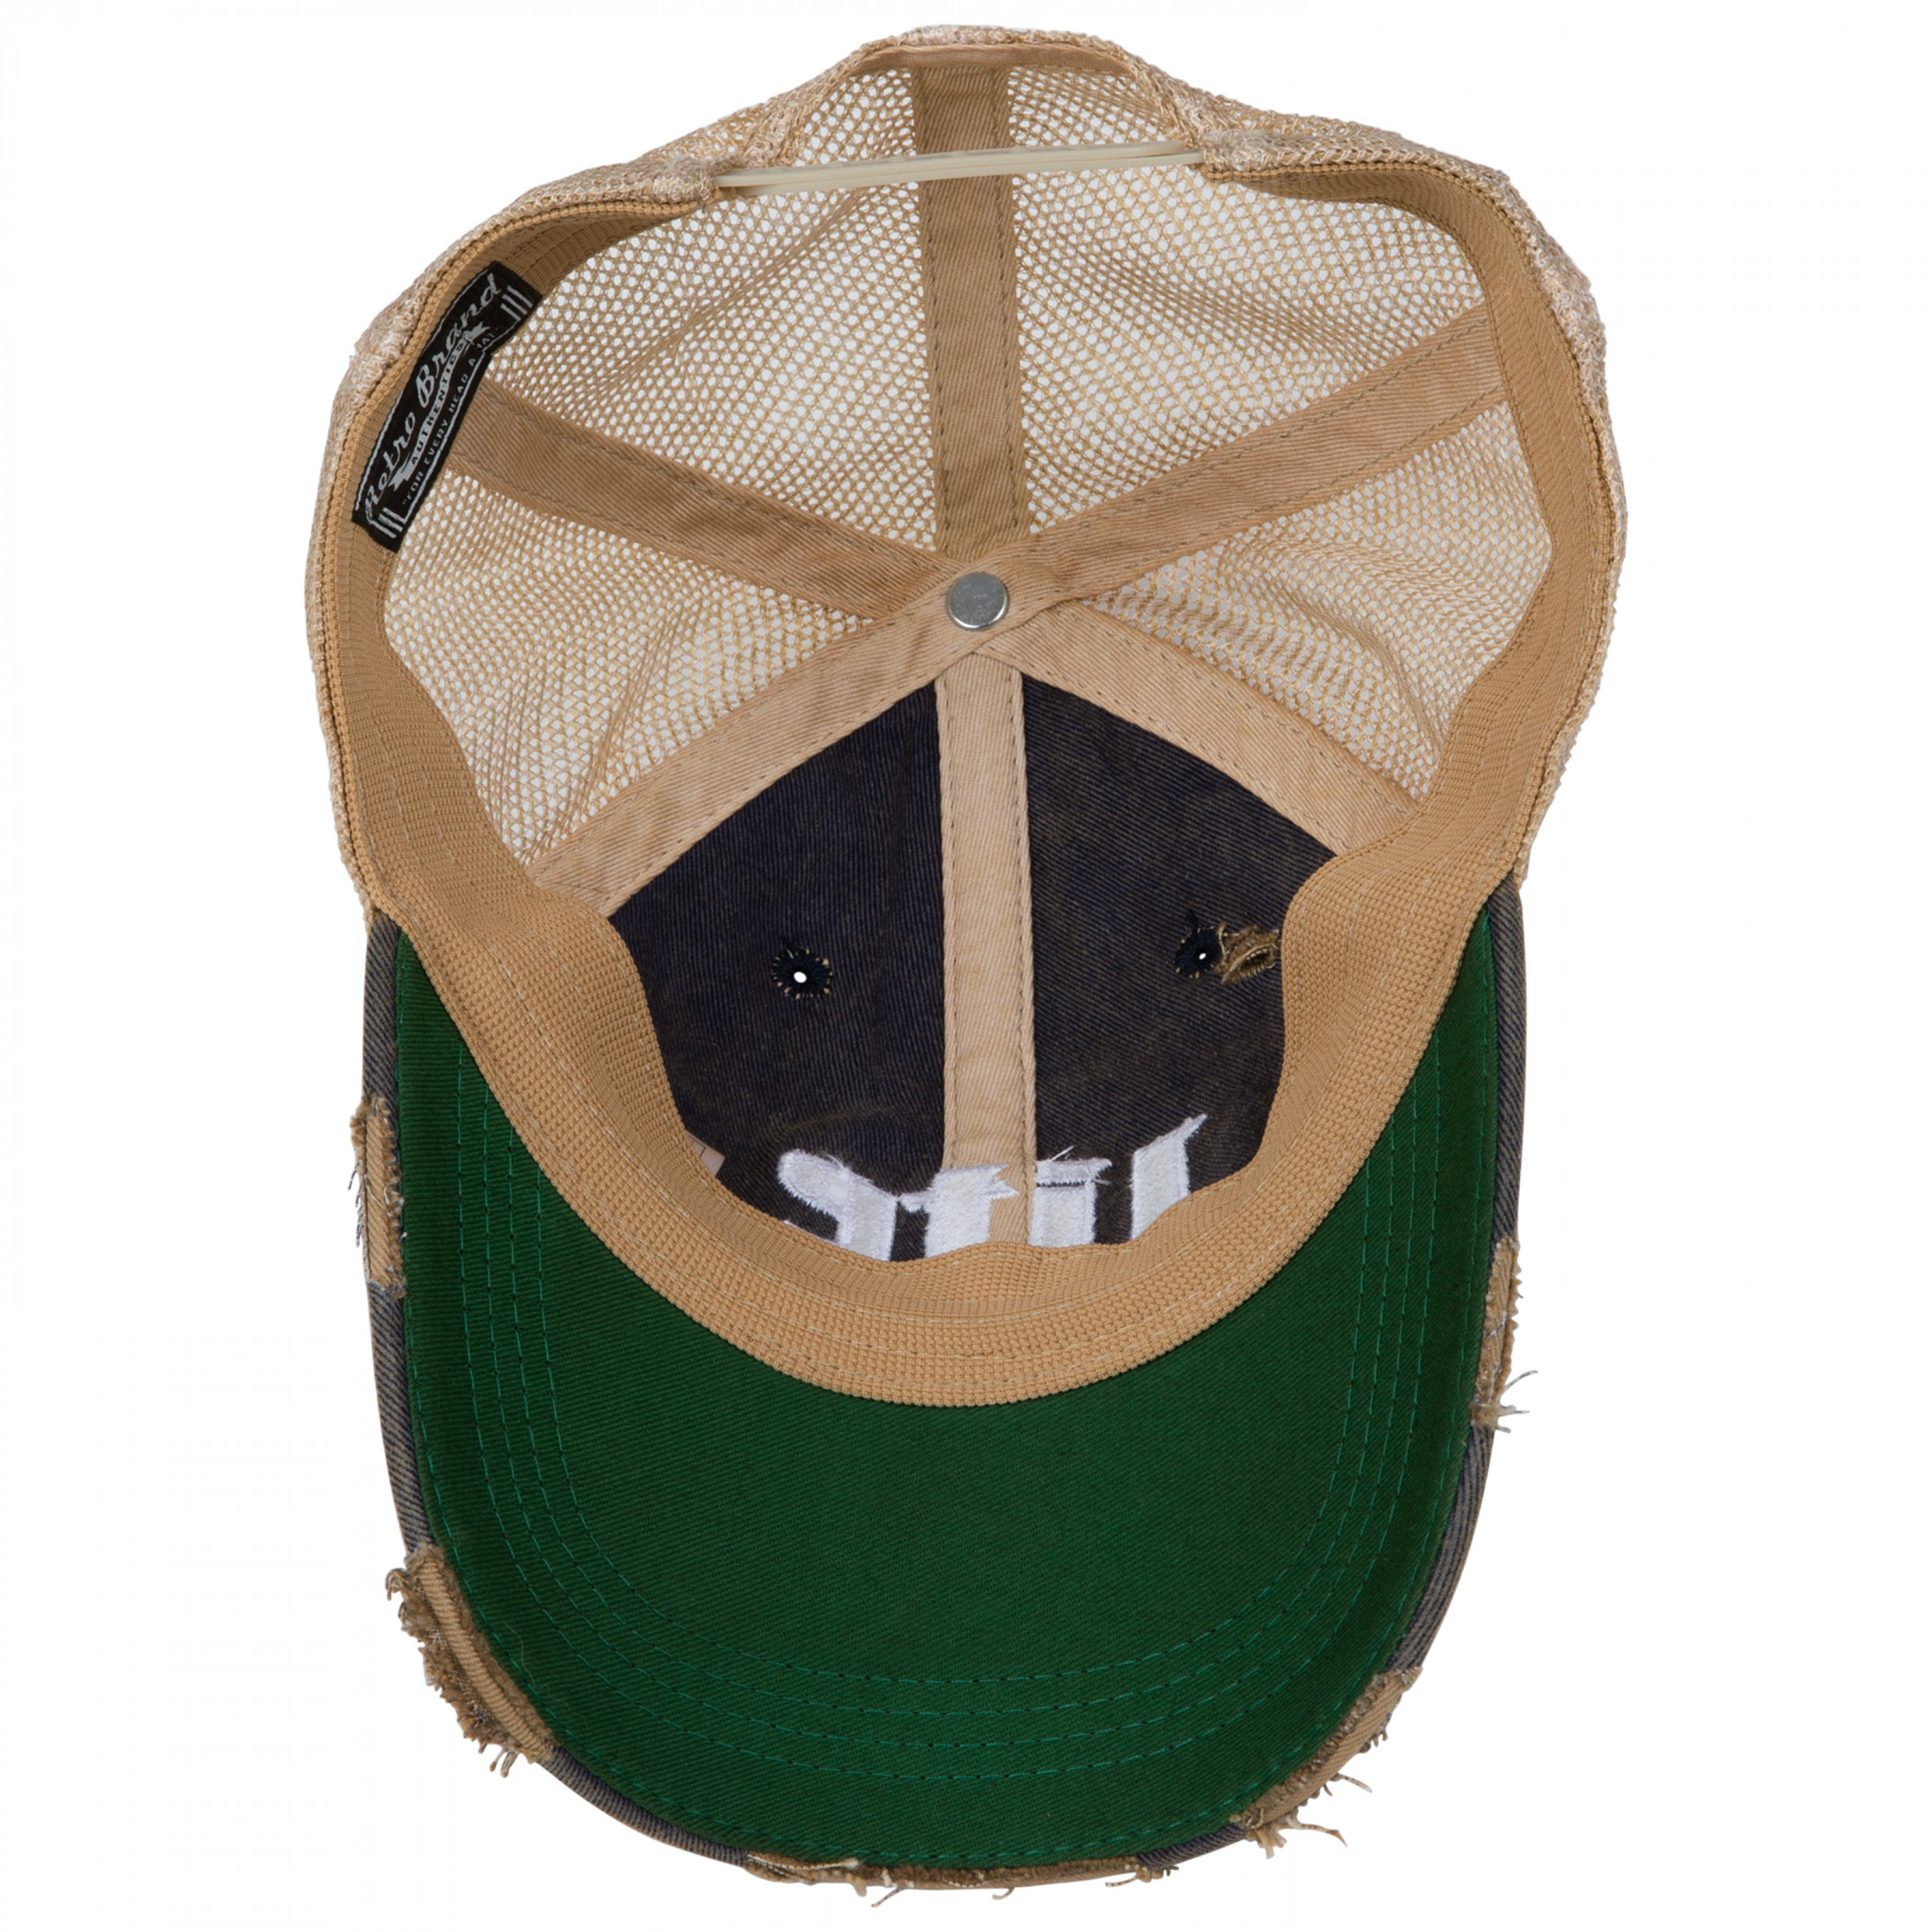 Miller Lite Logo Patch Distressed Adjustable Hat